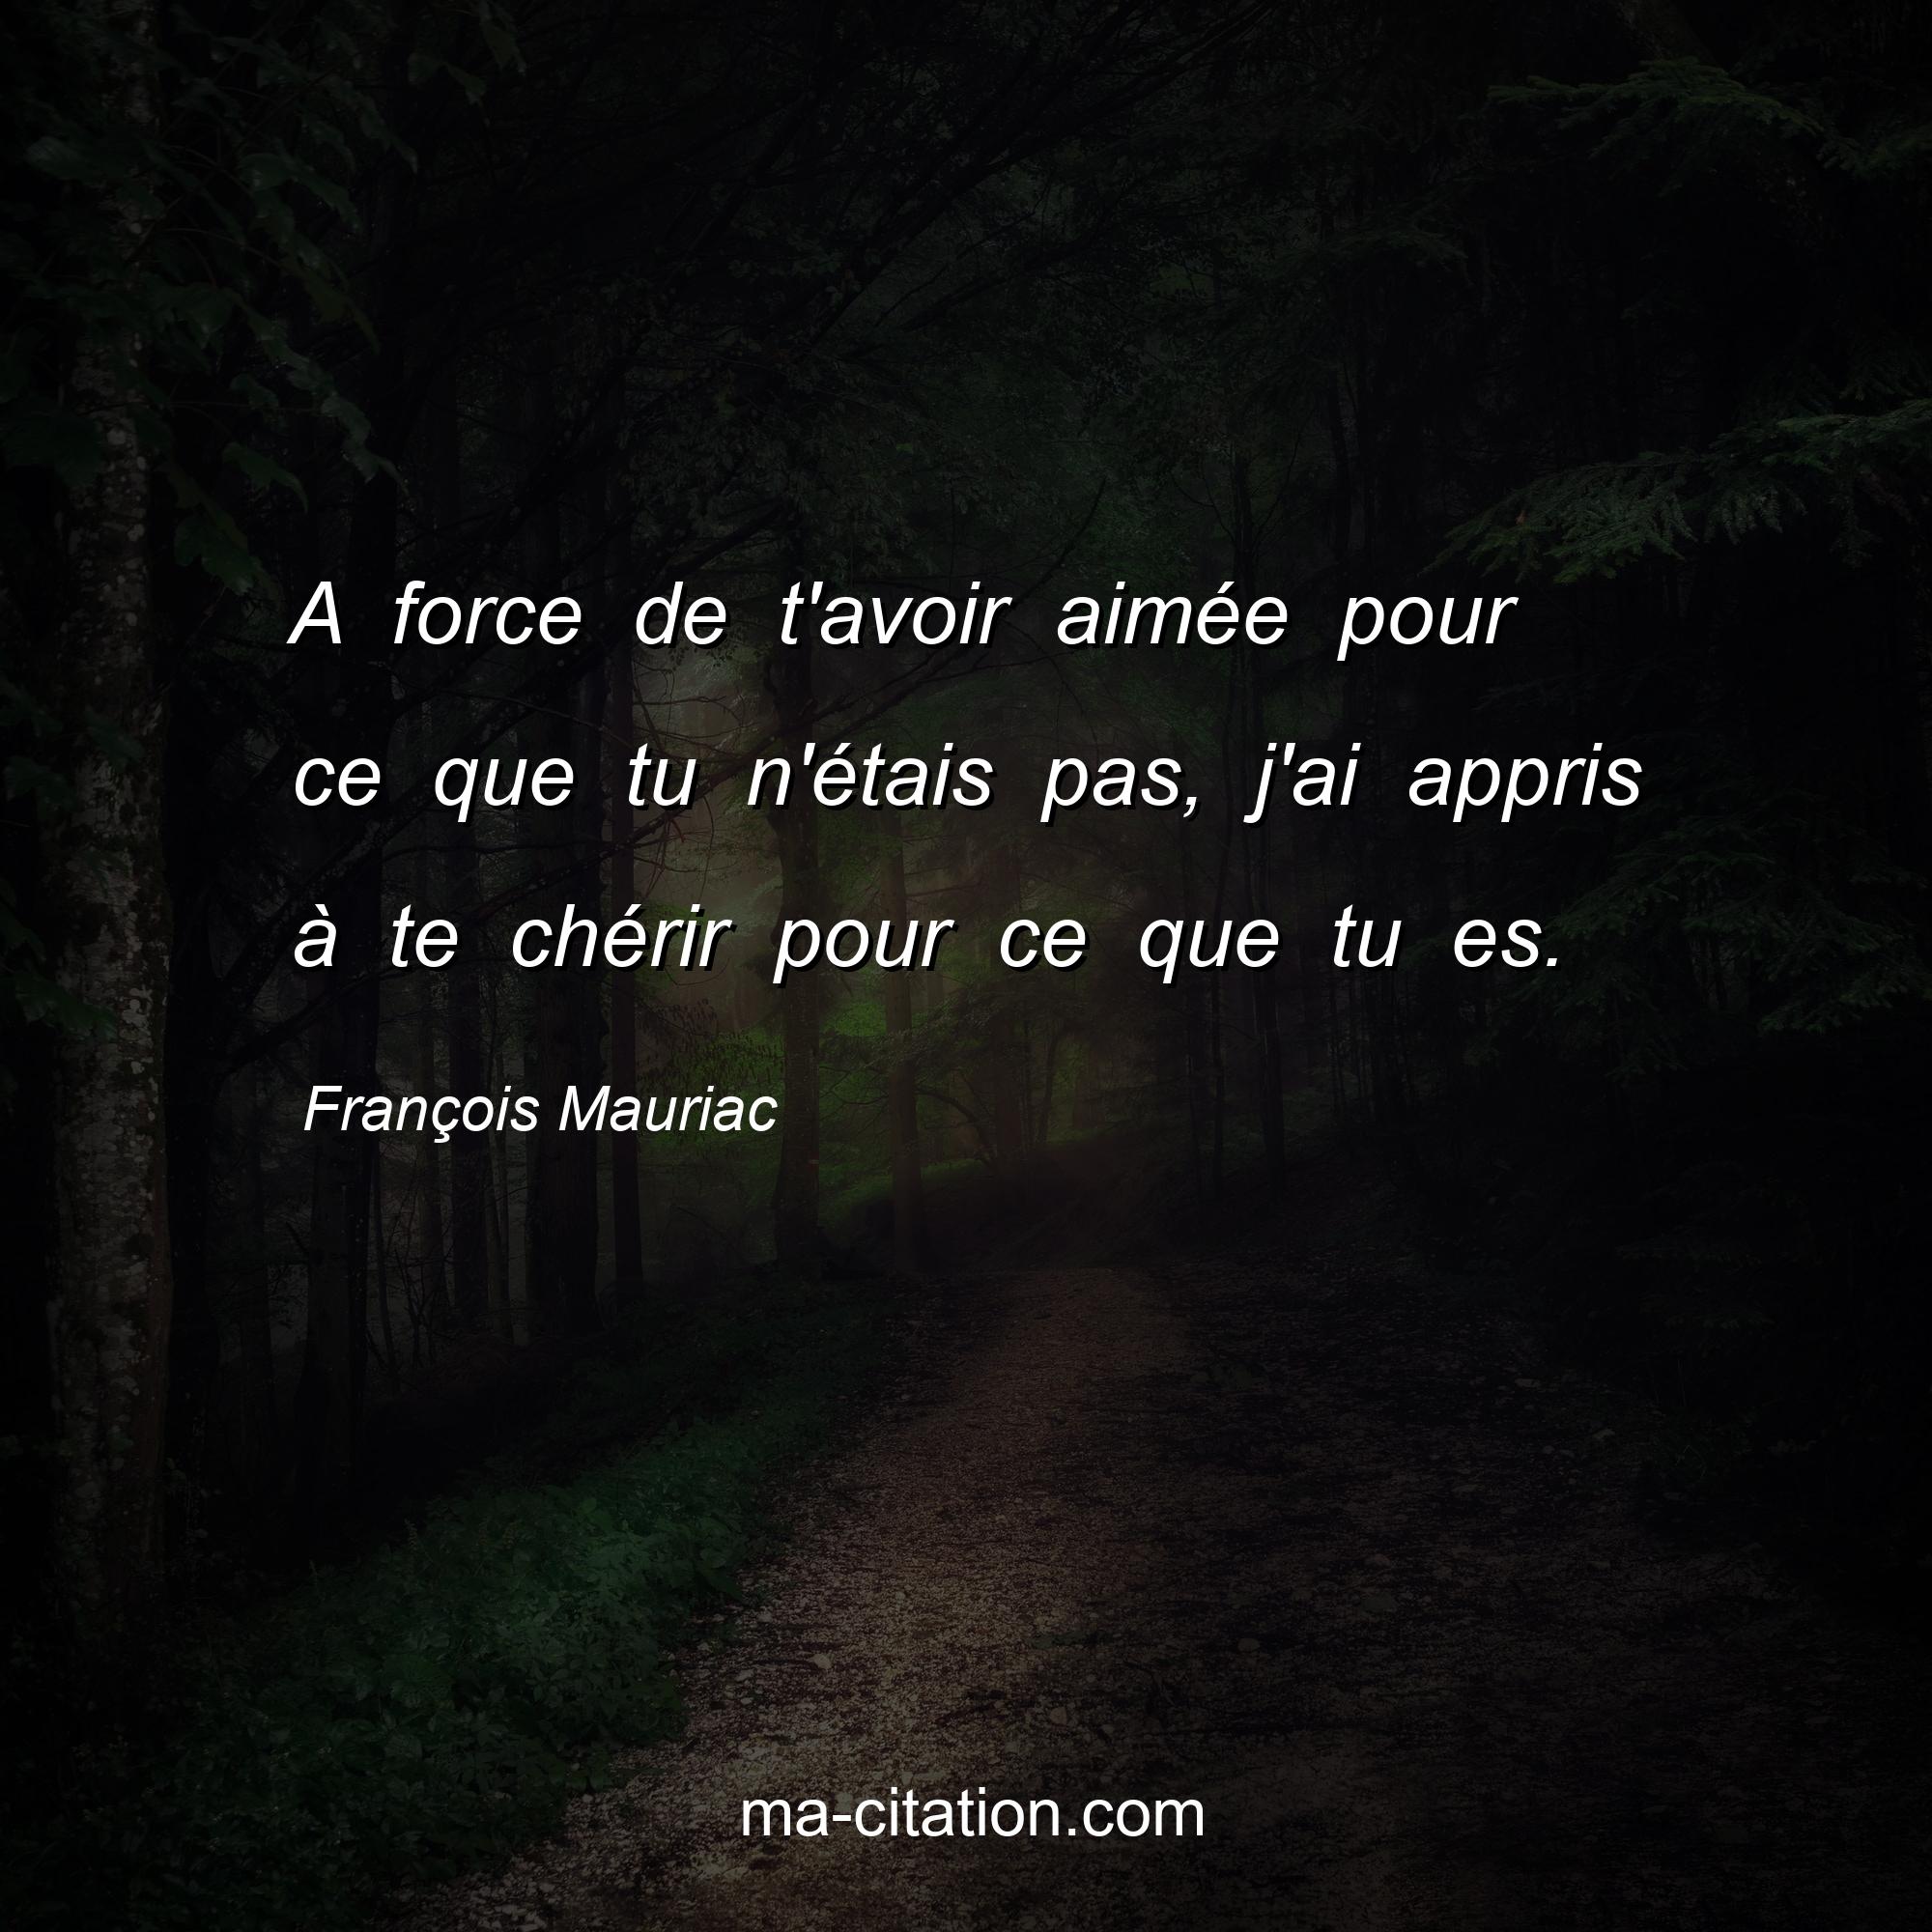 François Mauriac : A force de t'avoir aimée pour ce que tu n'étais pas, j'ai appris à te chérir pour ce que tu es.